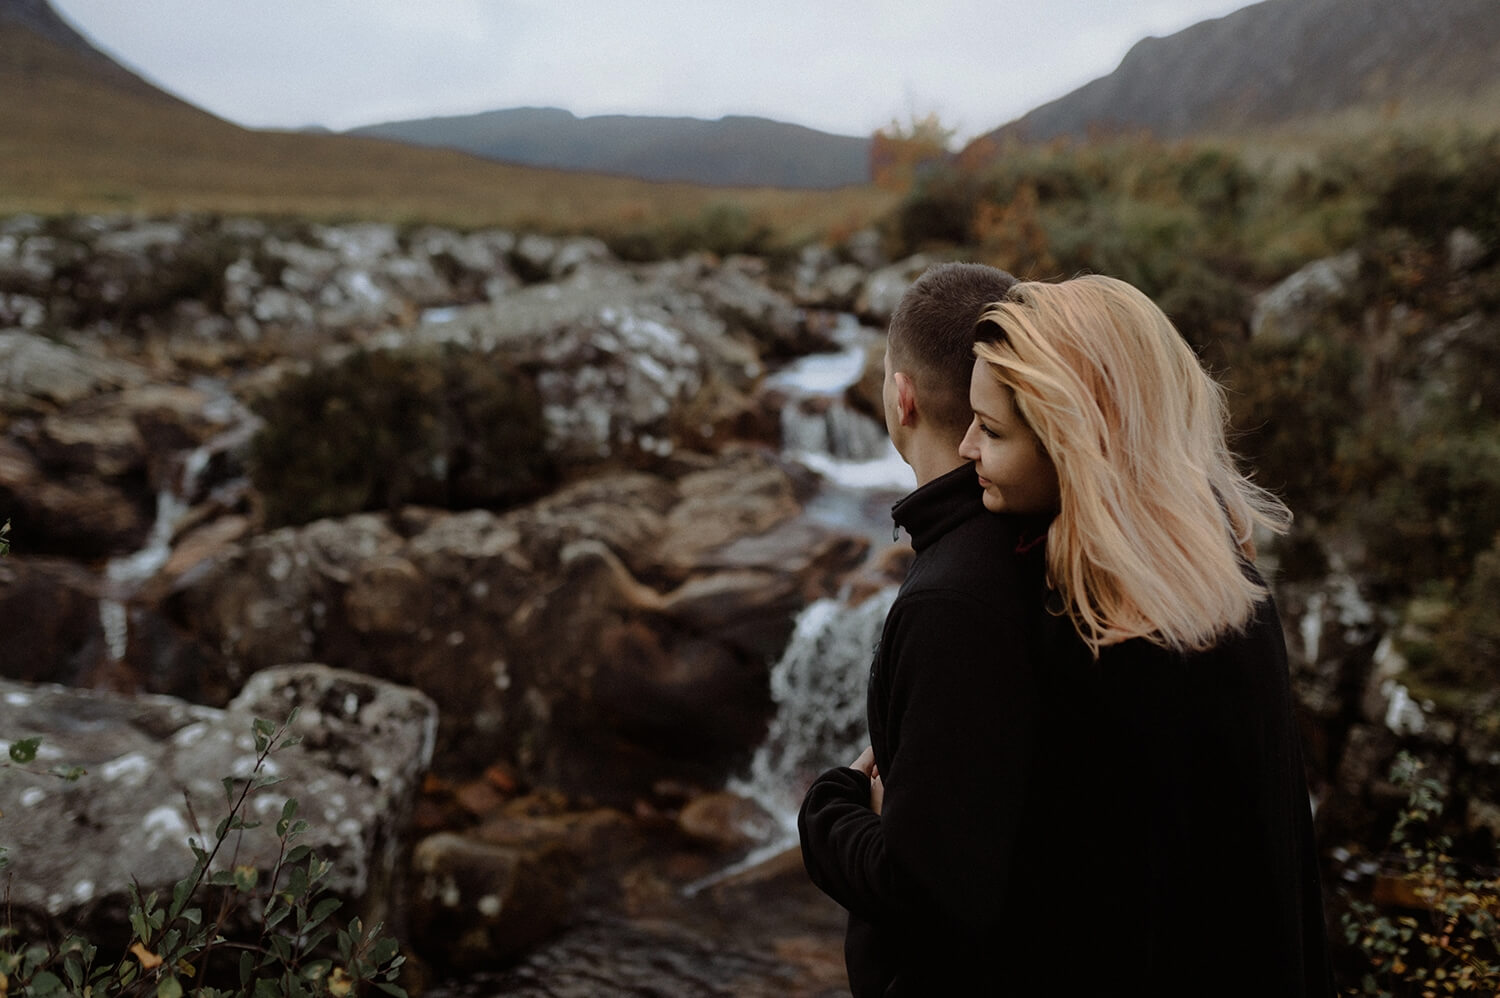 Couple portrait near a waterfall in Scotland.